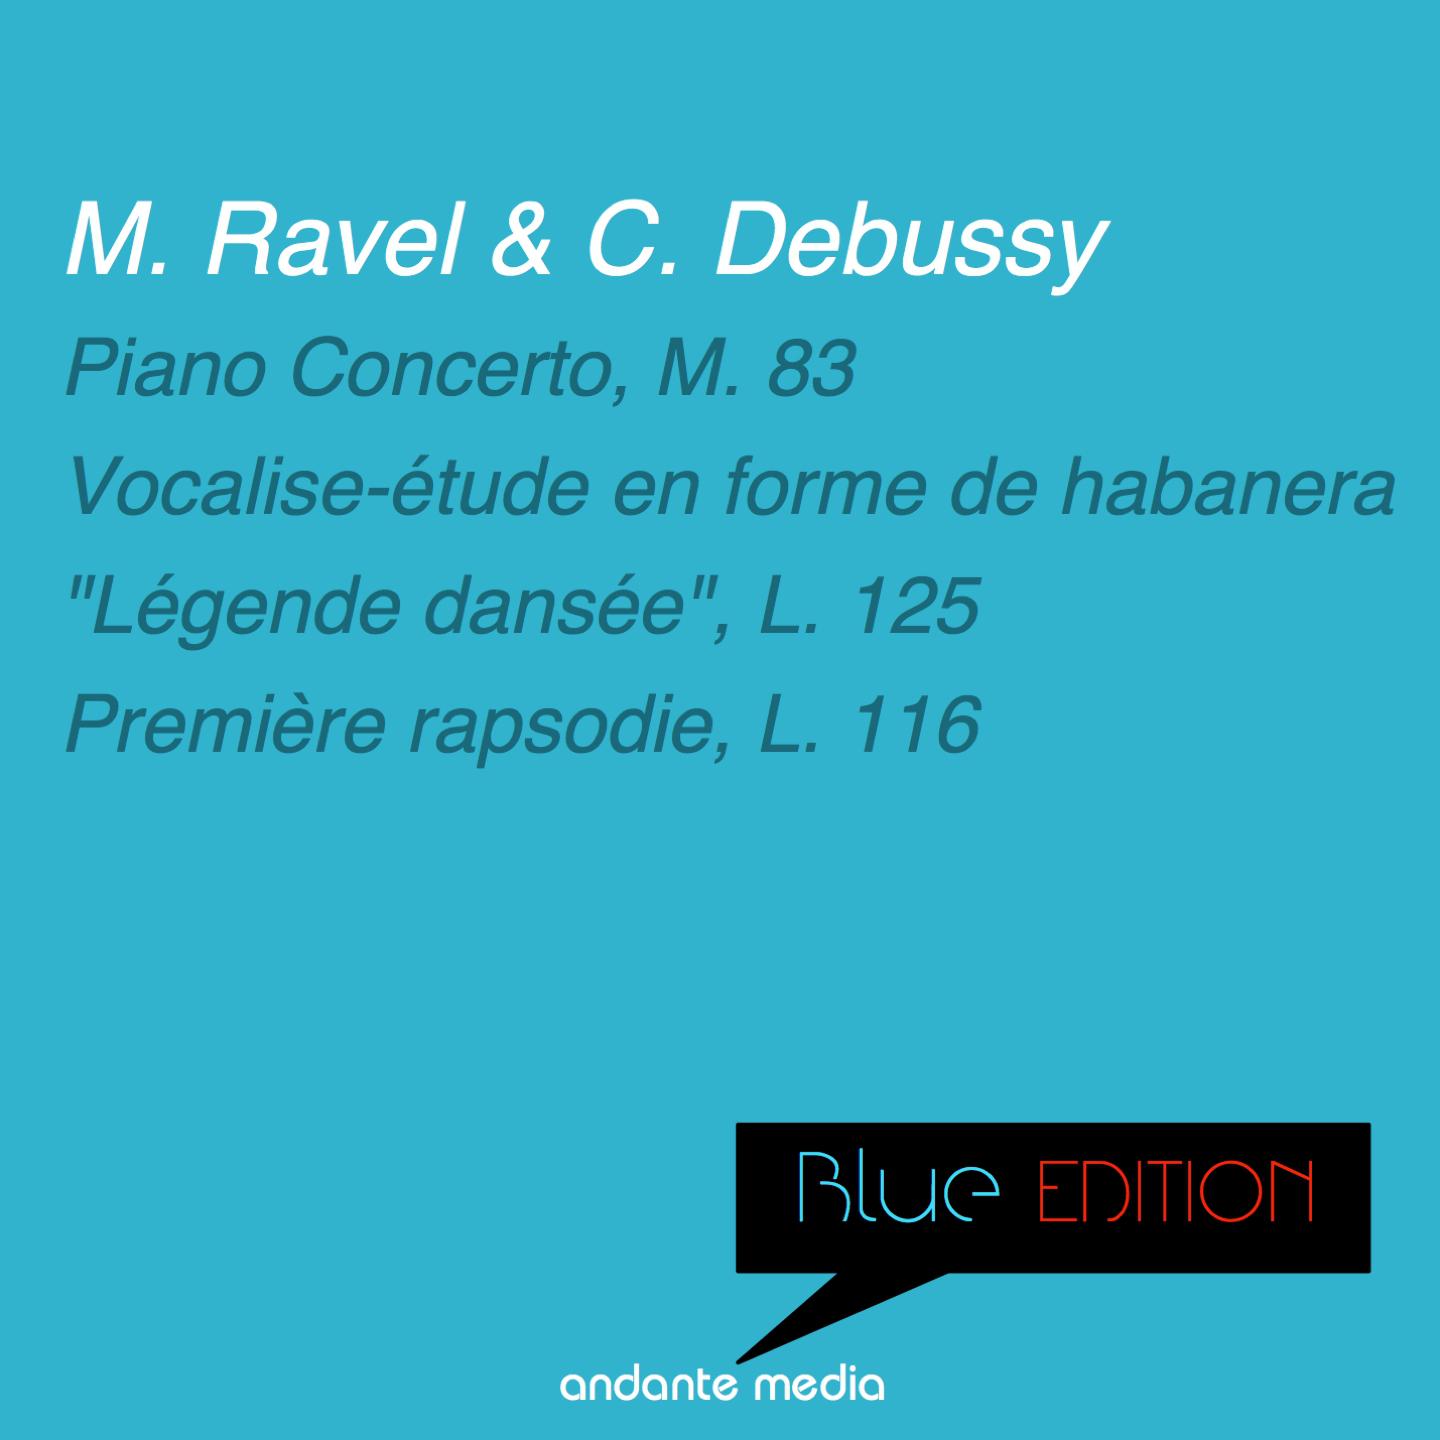 Blue Edition  Ravel  Debussy: Piano Concerto, M. 83 " Le gende danse e", L. 125